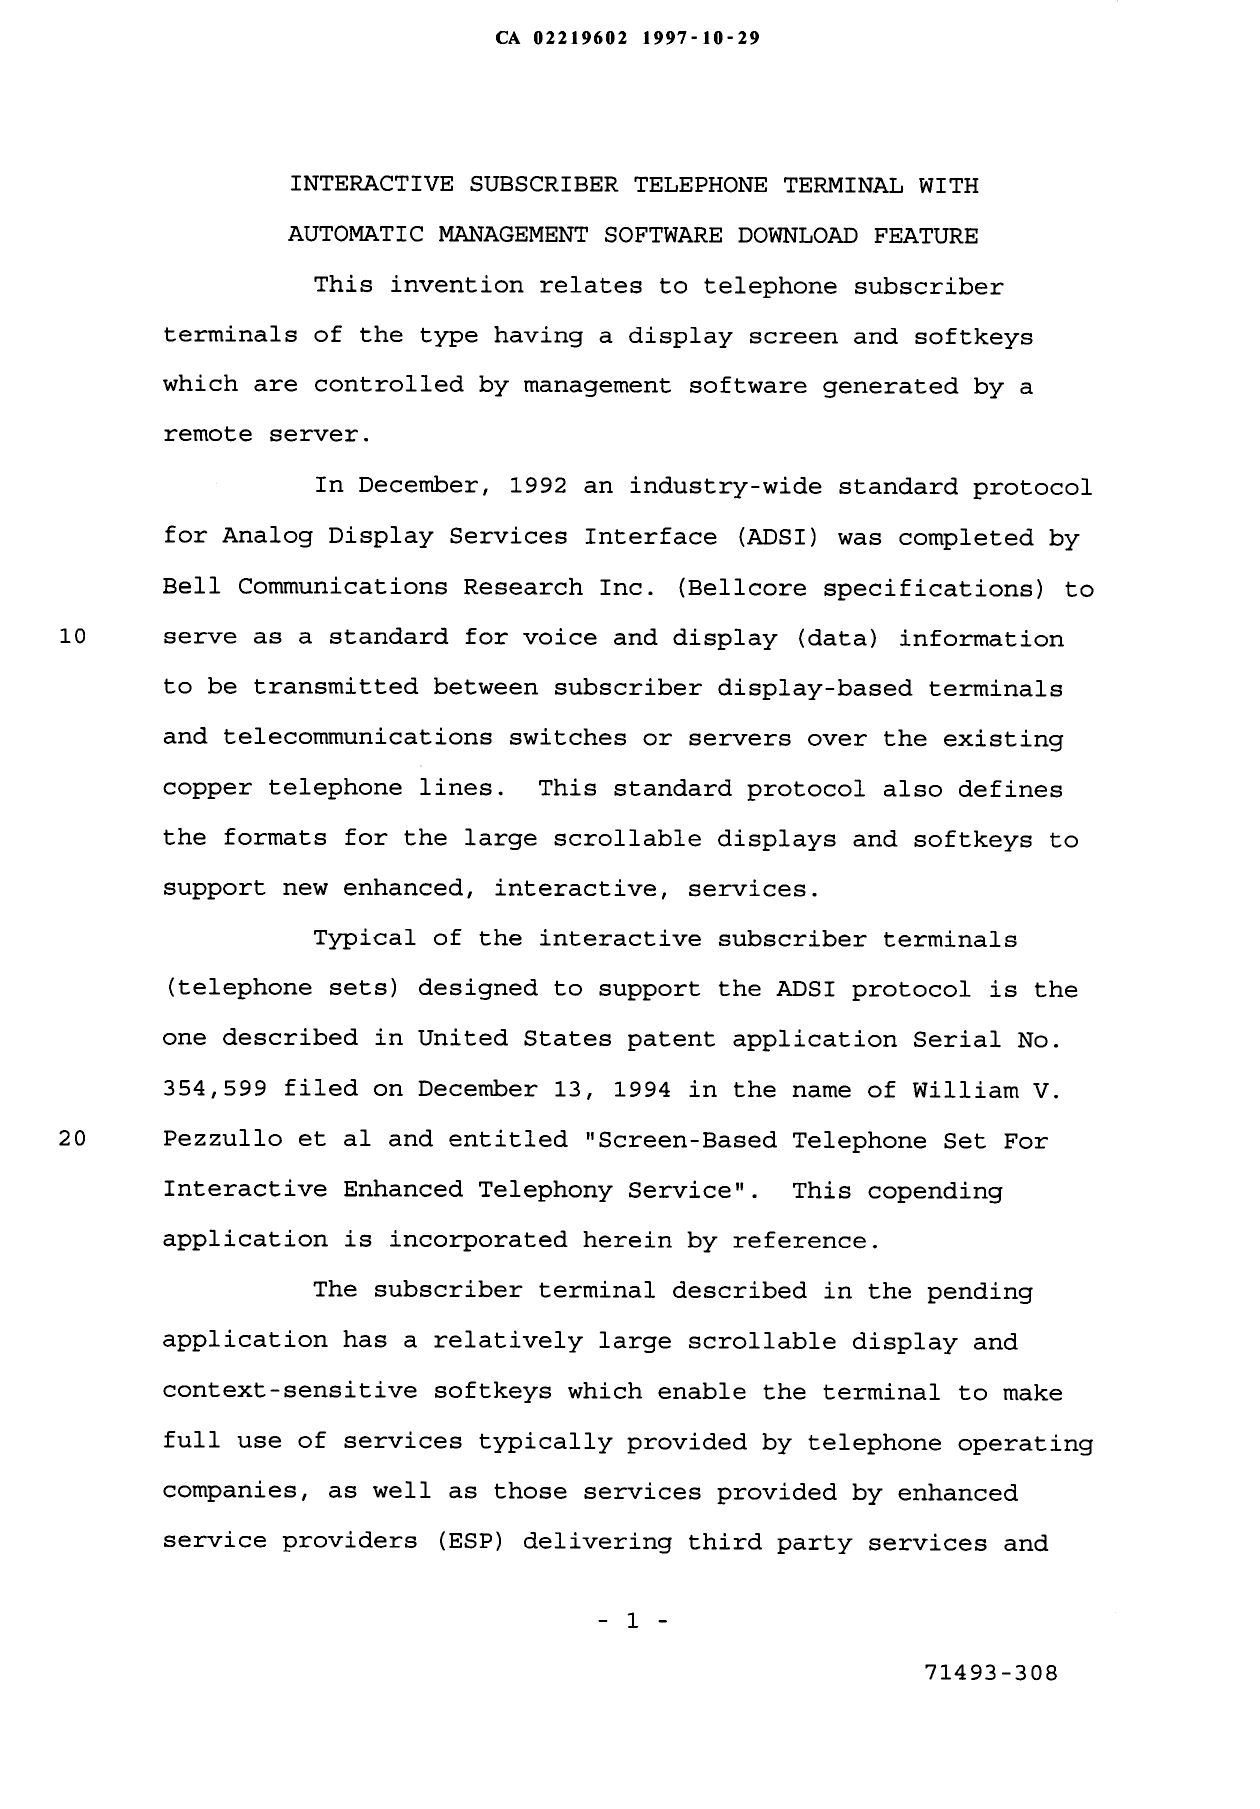 Canadian Patent Document 2219602. Description 19971029. Image 1 of 12